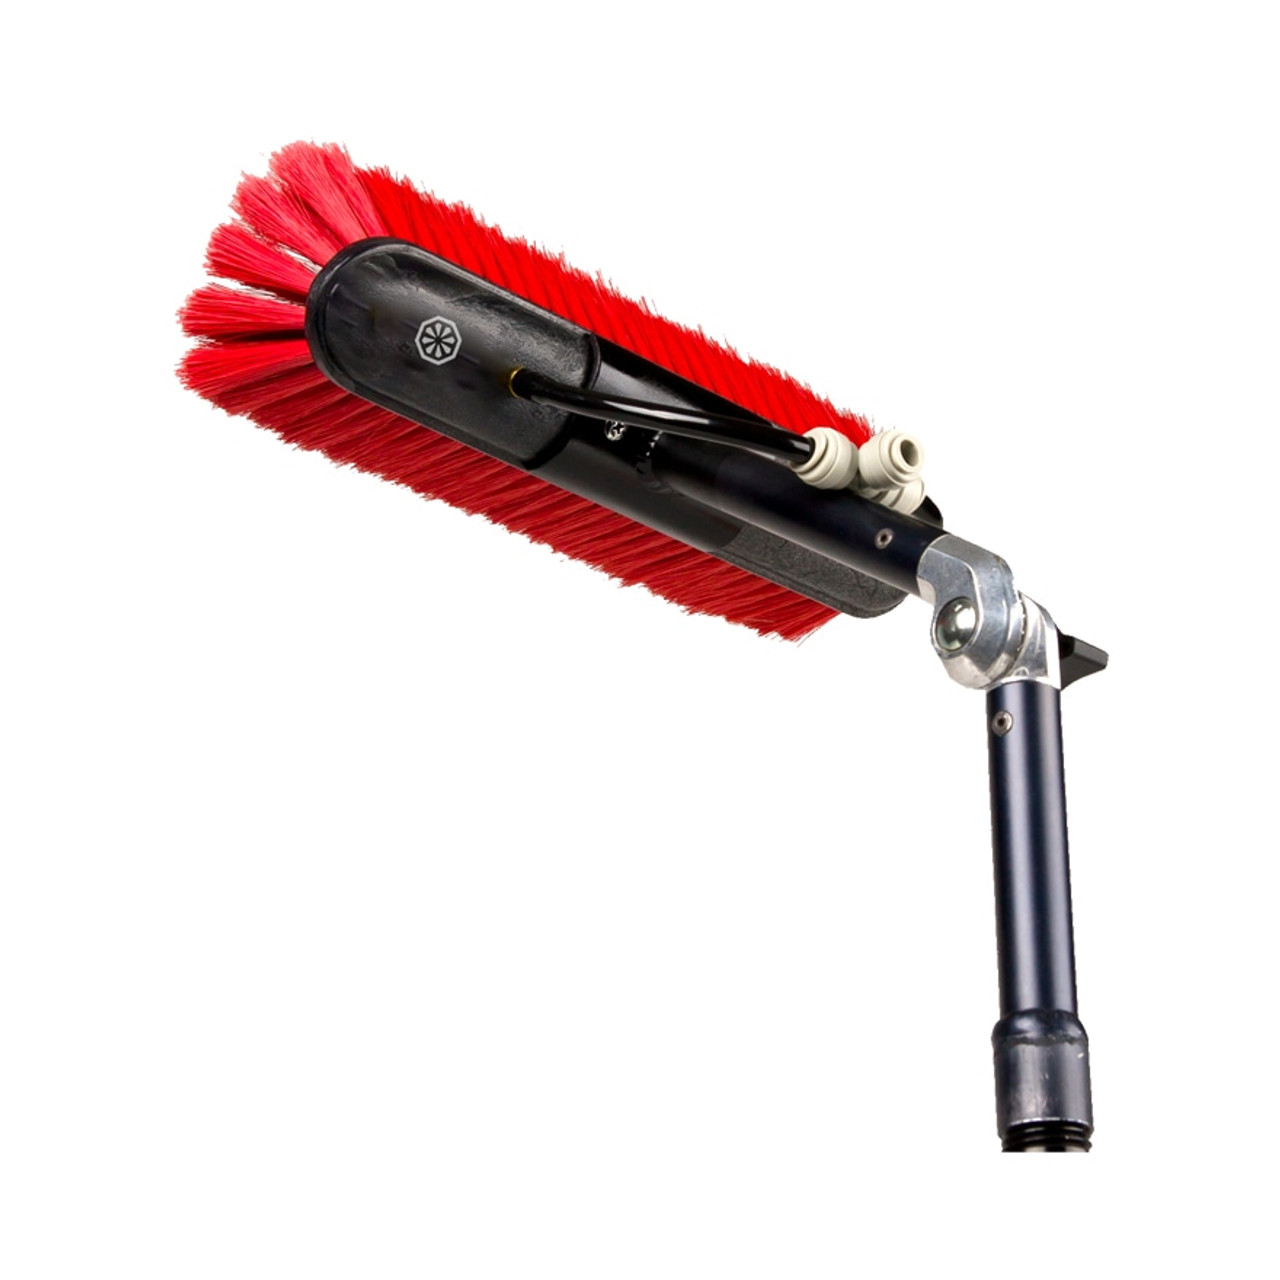 IPC 14 Speed Brush, Waterfed Brushes